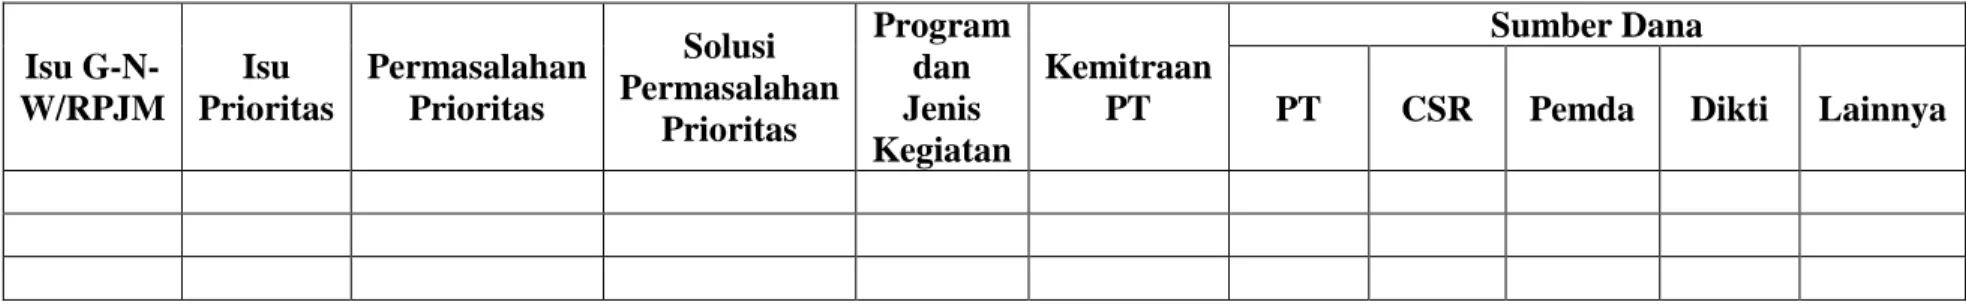 Tabel 13. Penerapan program dan kegiatan PPM Polihasnur  Isu  G-N-W/RPJM  Isu  Prioritas  Permasalahan Prioritas  Solusi  Permasalahan  Prioritas  Program dan Jenis  Kegiatan  Kemitraan PT  Sumber Dana 